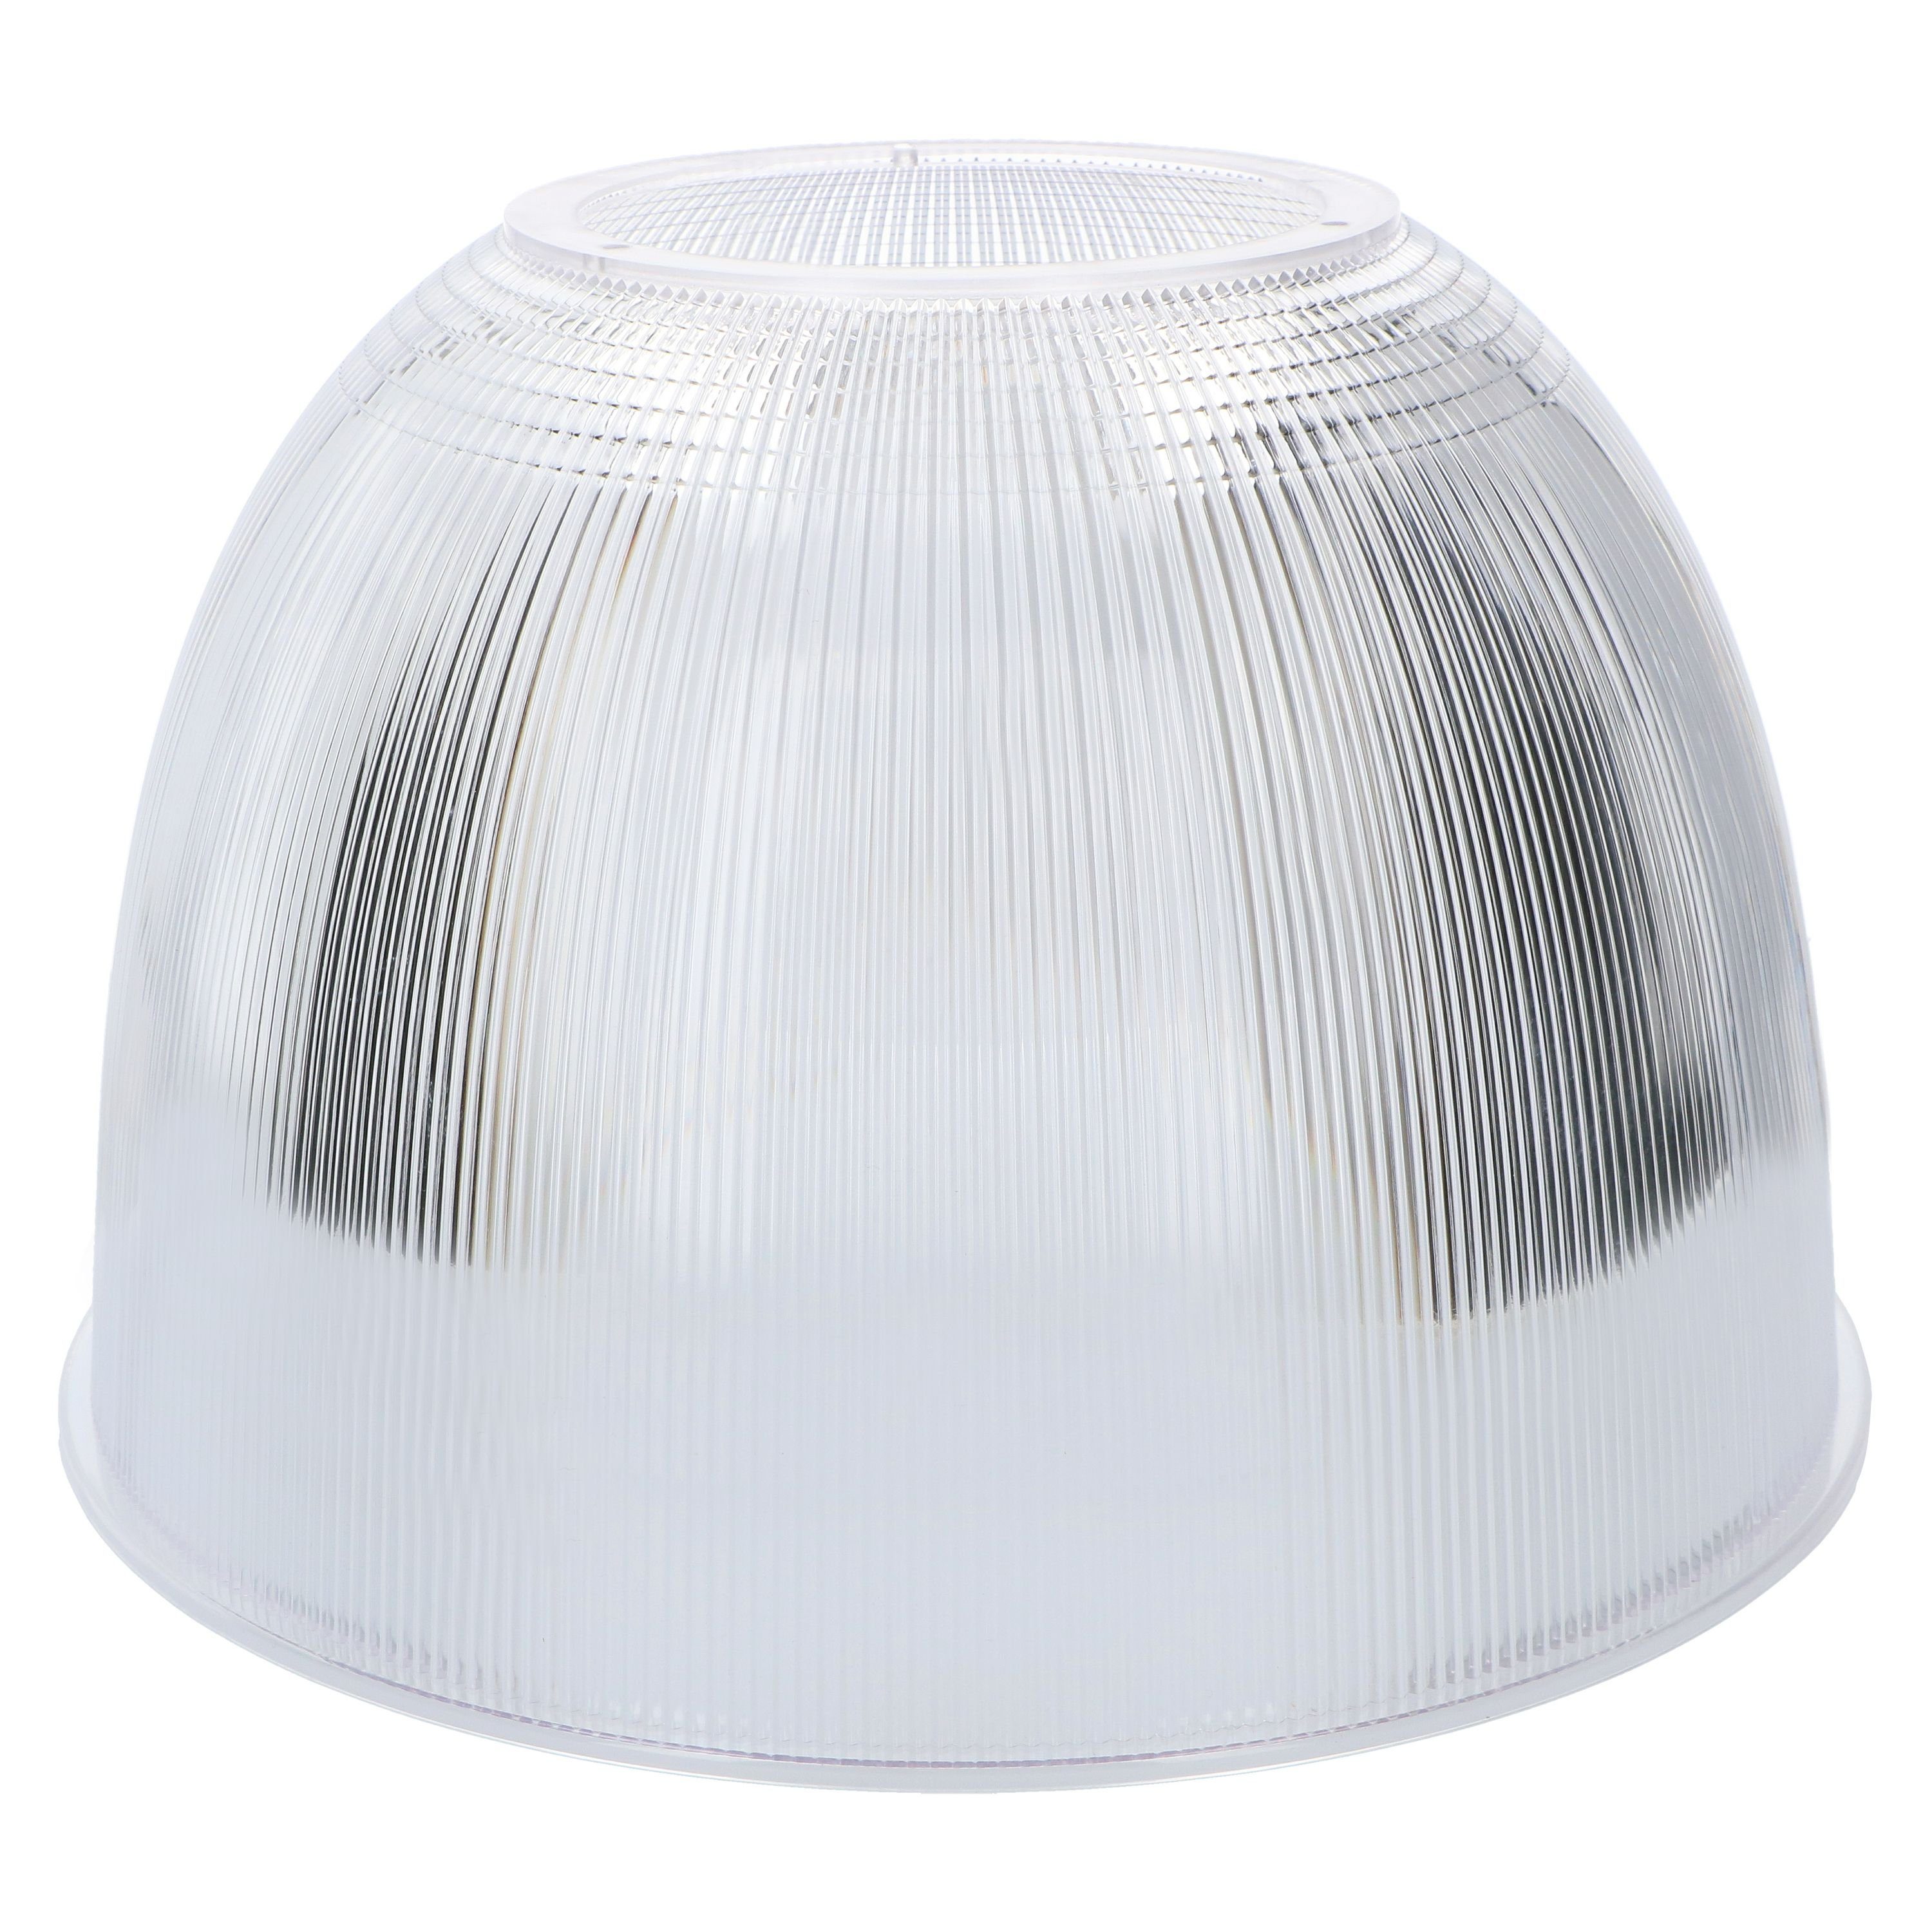 LED-Hallentiefstrahler LED's 70°, Pendelleuchte 240034X-1 LED, passend light LED für Reflektor